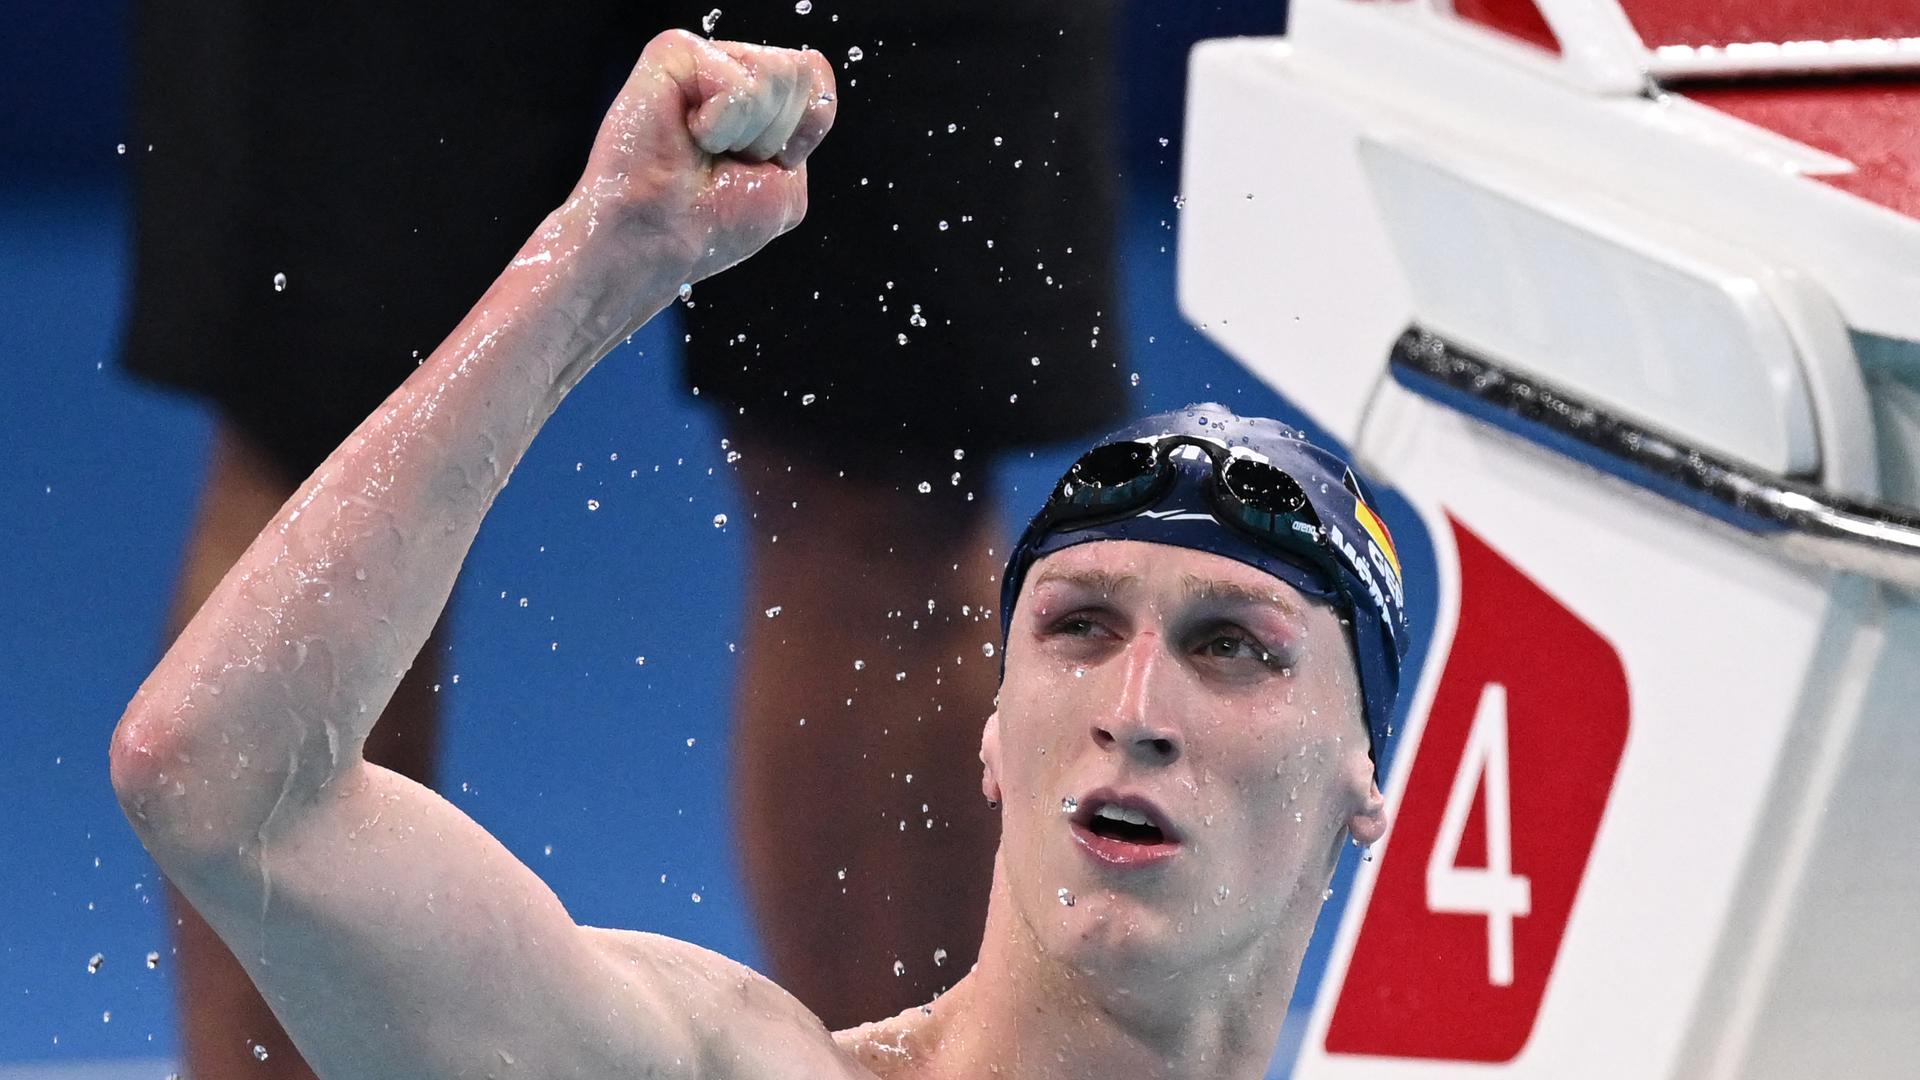 Das Bild zeigt den deutschen Schwimmer Lukas Märtens nach dem Gewinn der Goldmedaille über 400 Meter Freistil bei den Olympischen Spielen in Paris. Er reckt den Arm als Zeichen des Sieges. 